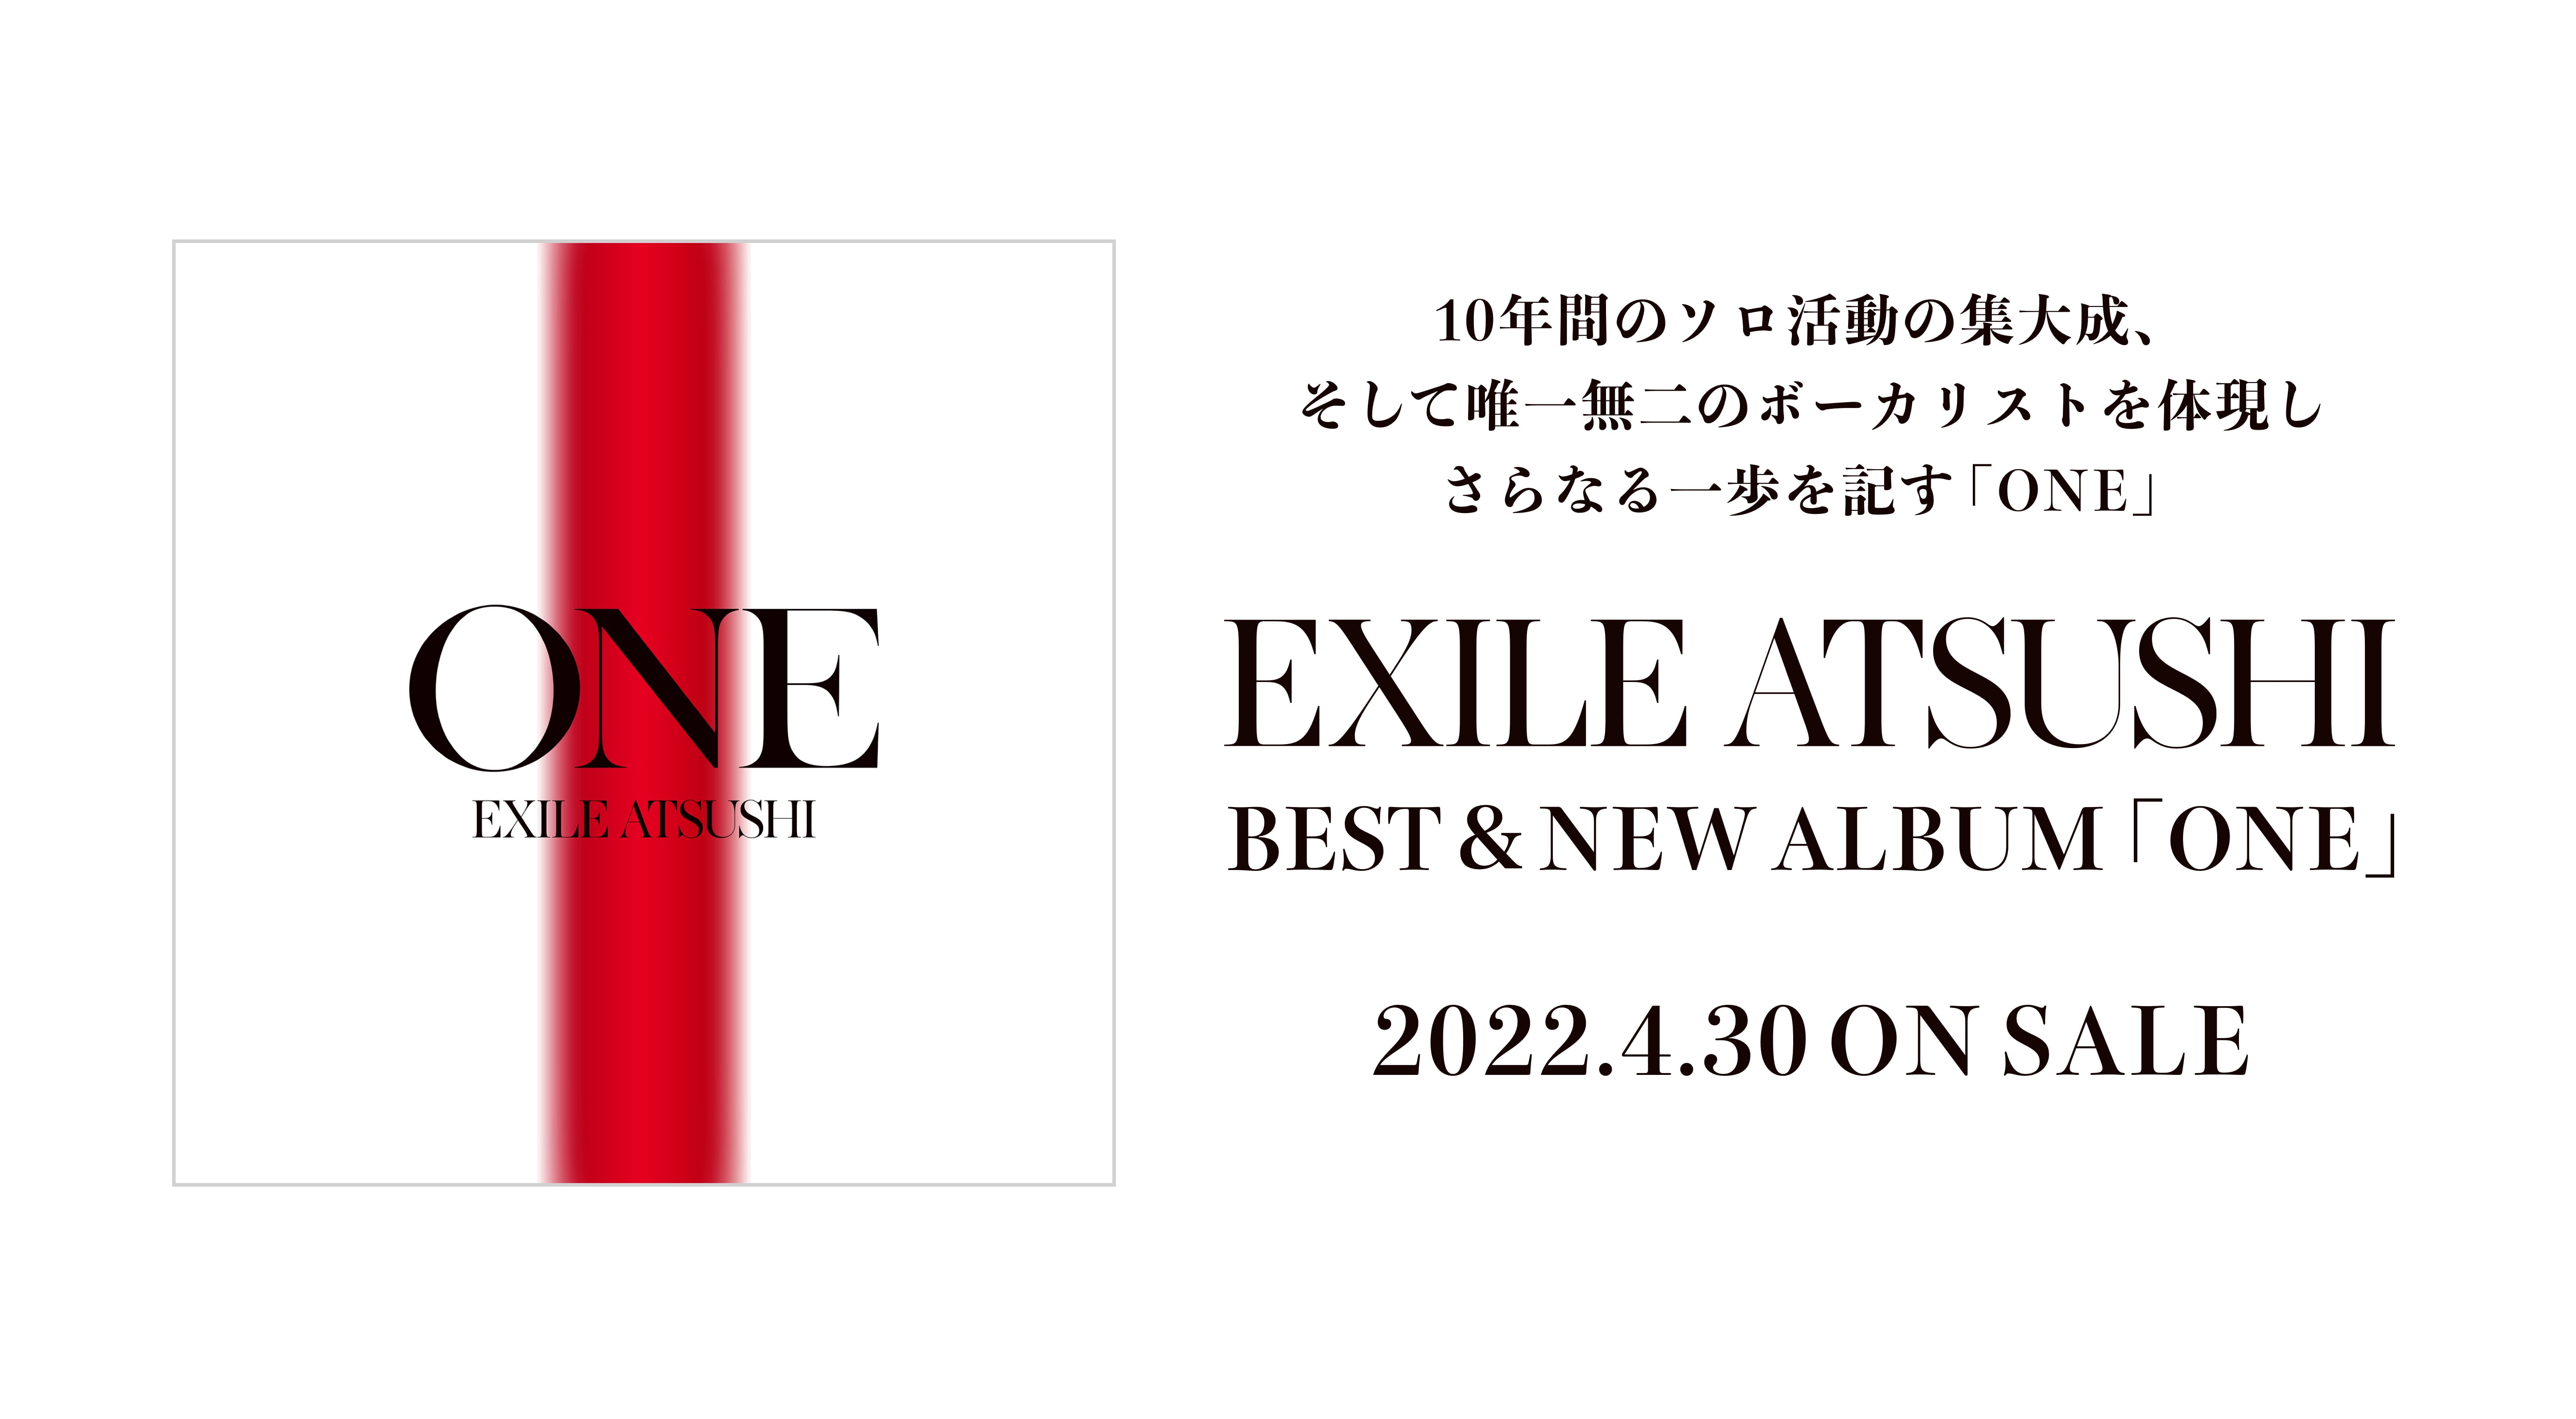 10年間のソロ活動の集大成、そして唯一無二のボーカリストを体現しさらなる一歩を記す「ONE」 EXILE ATSUSHI BEST&NEW ALBUM「ONE」2022.4.30 ON SALE